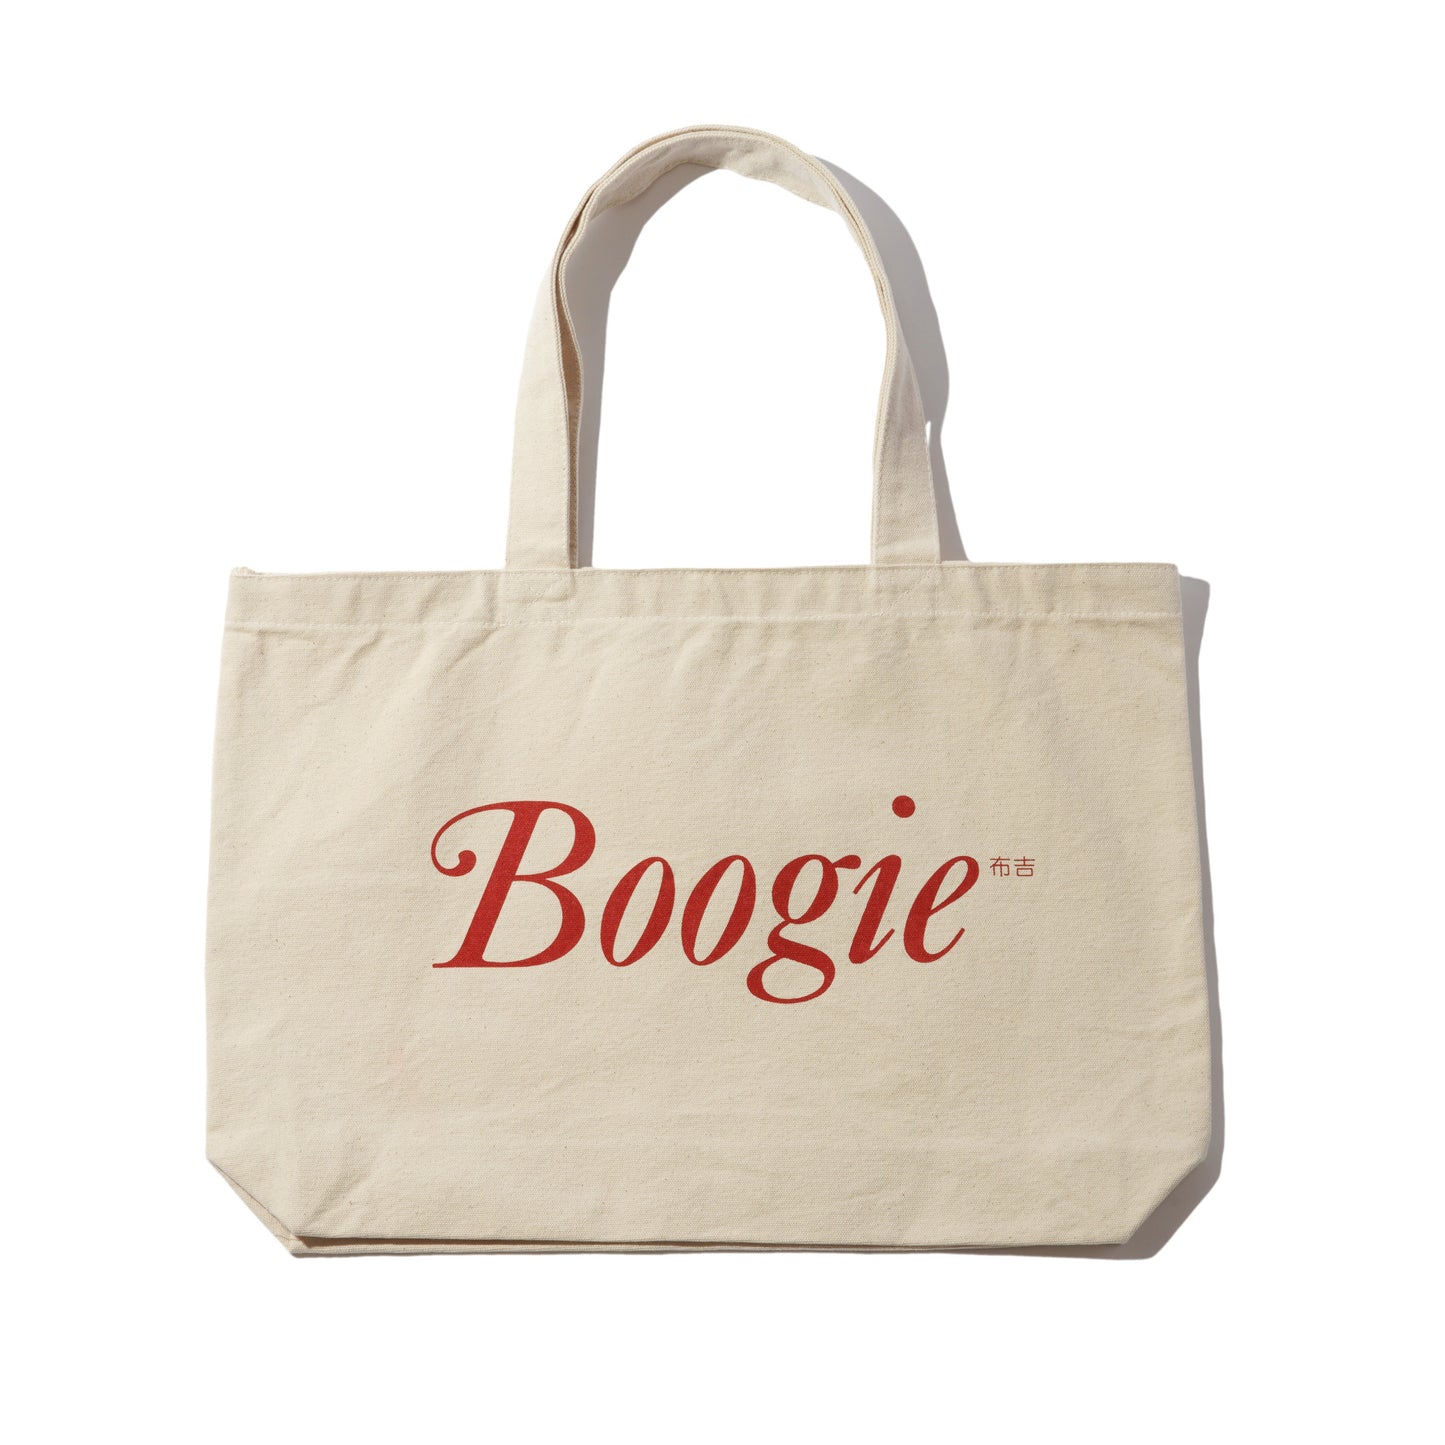 Boogie Tote Bag - Black